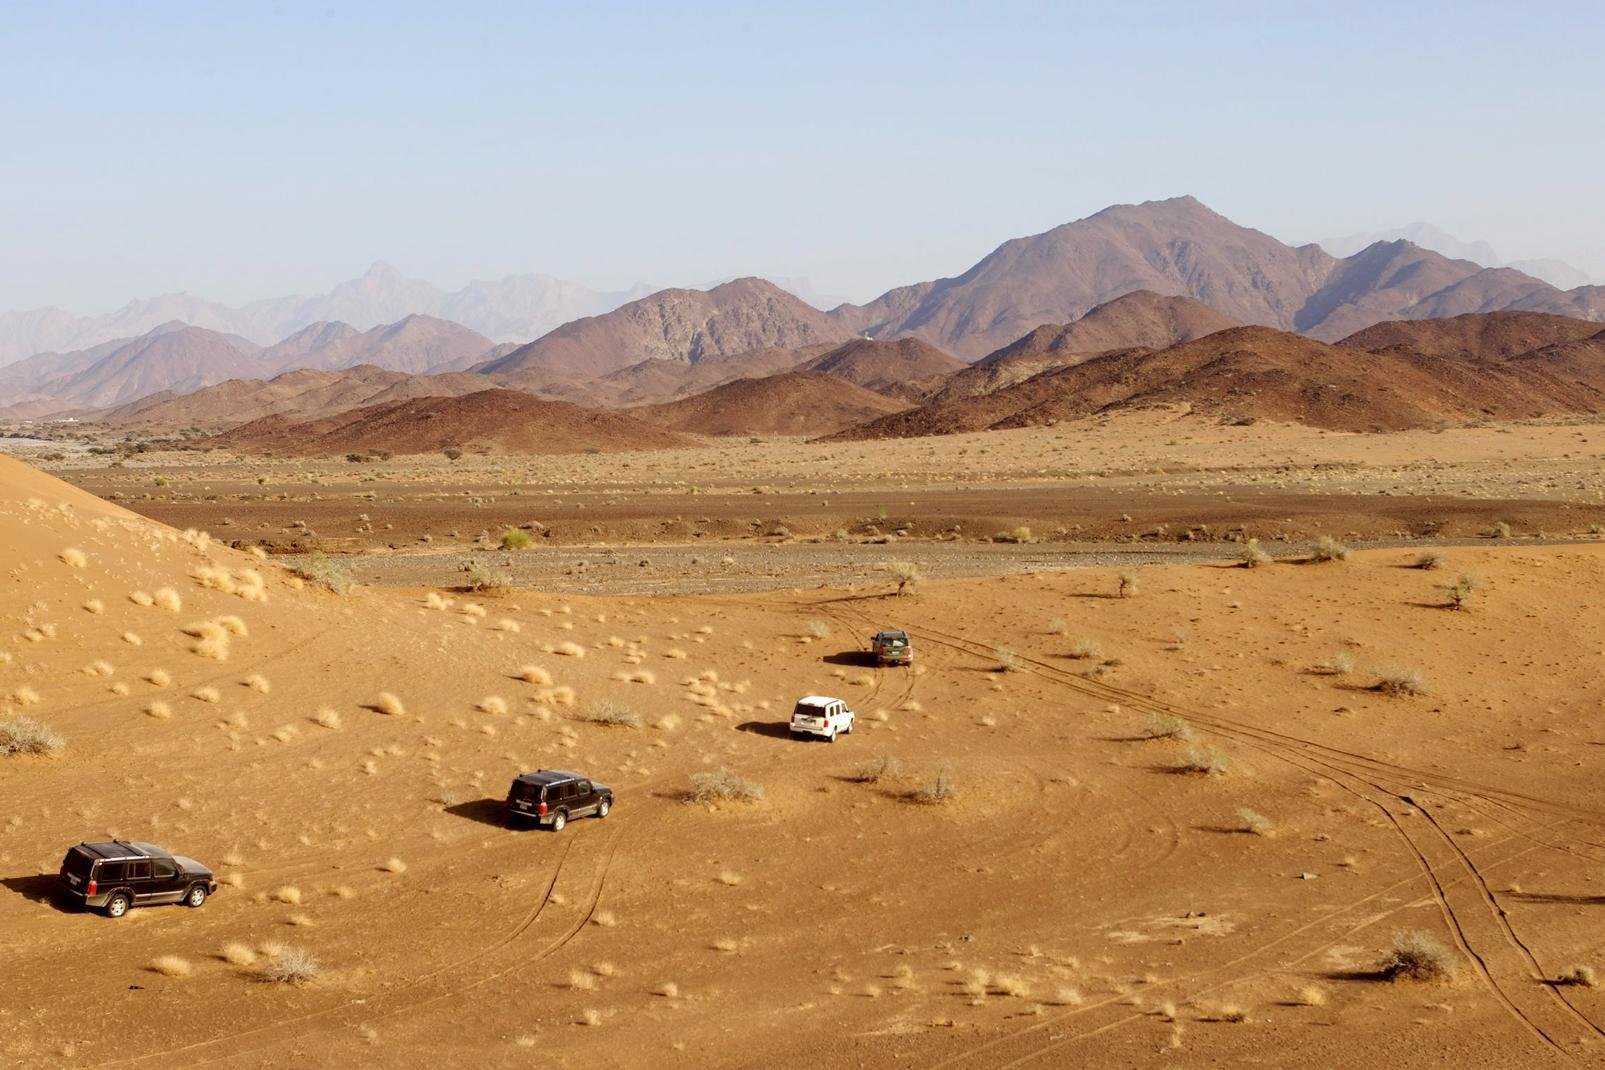 Dans la province d'Al Sharqiya, à 220 km de Mascate et son aéroport, la ville d'Al Wasil, située à 11 km des pistes, est la porte d'entrée du désert du Wahiba Sands. Habité par 3 000 bédouins, 1 500 dromadaires et 15 000 chèvres, de désert couvre un territoire de 200 km du nord au sud et 80 km d'est en ouest. Vous pouvez dormir dans plusieurs camps dans le désert du Wahiba ...